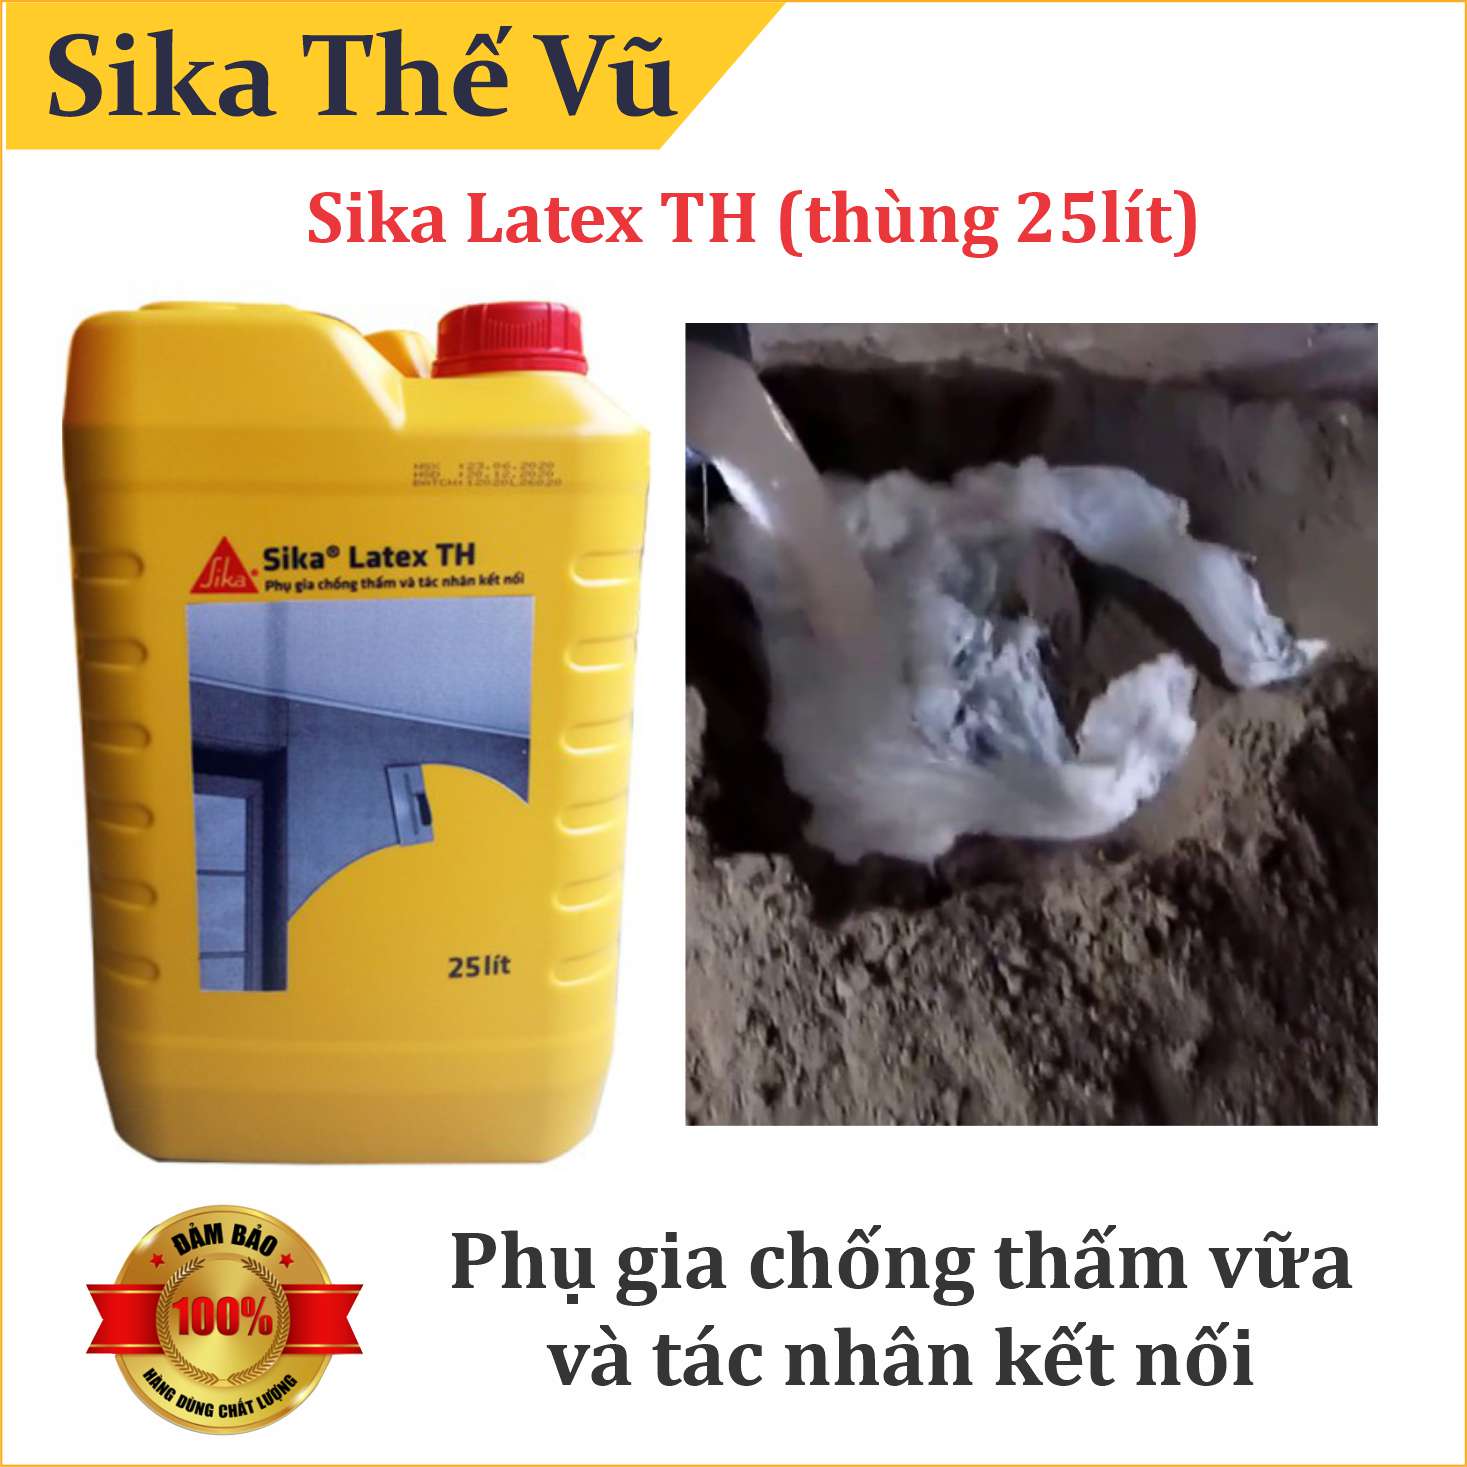 Phụ gia chống thấm vữa và tác nhân kết nối - Sikalatex TH (thùng 25lít)